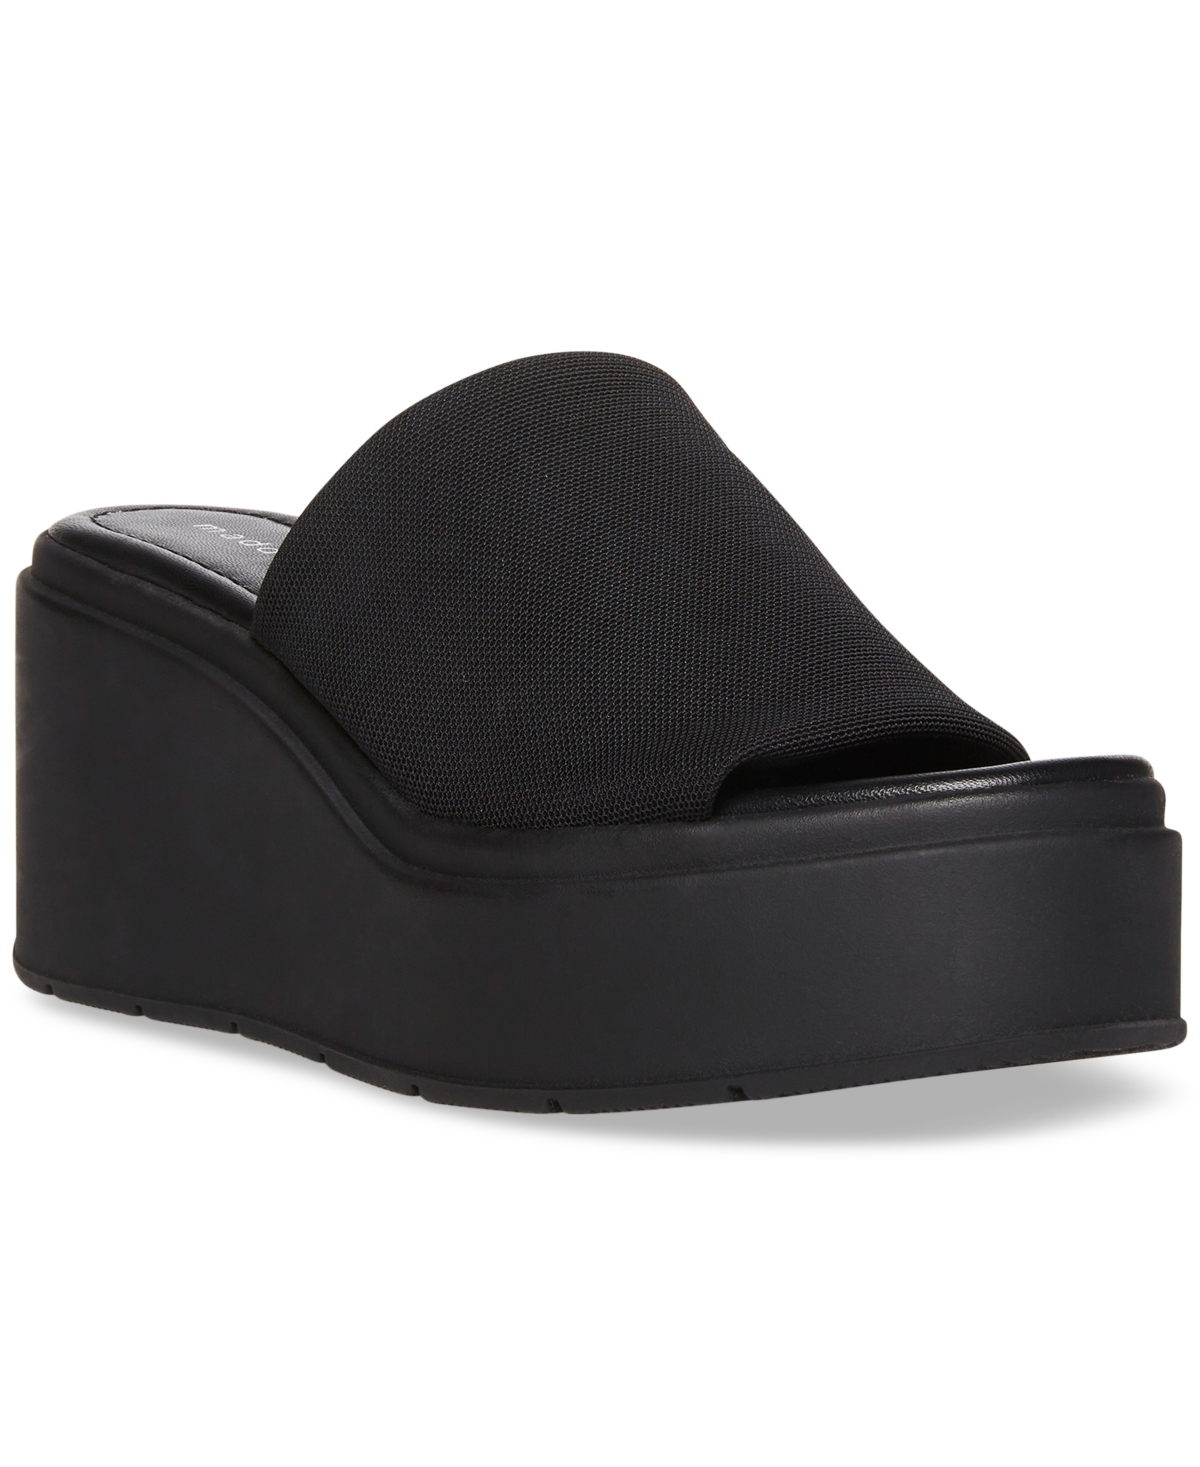 Madden Girl Wesley Platform Wedge Slide Sandaal In Black Smooth | ModeSens